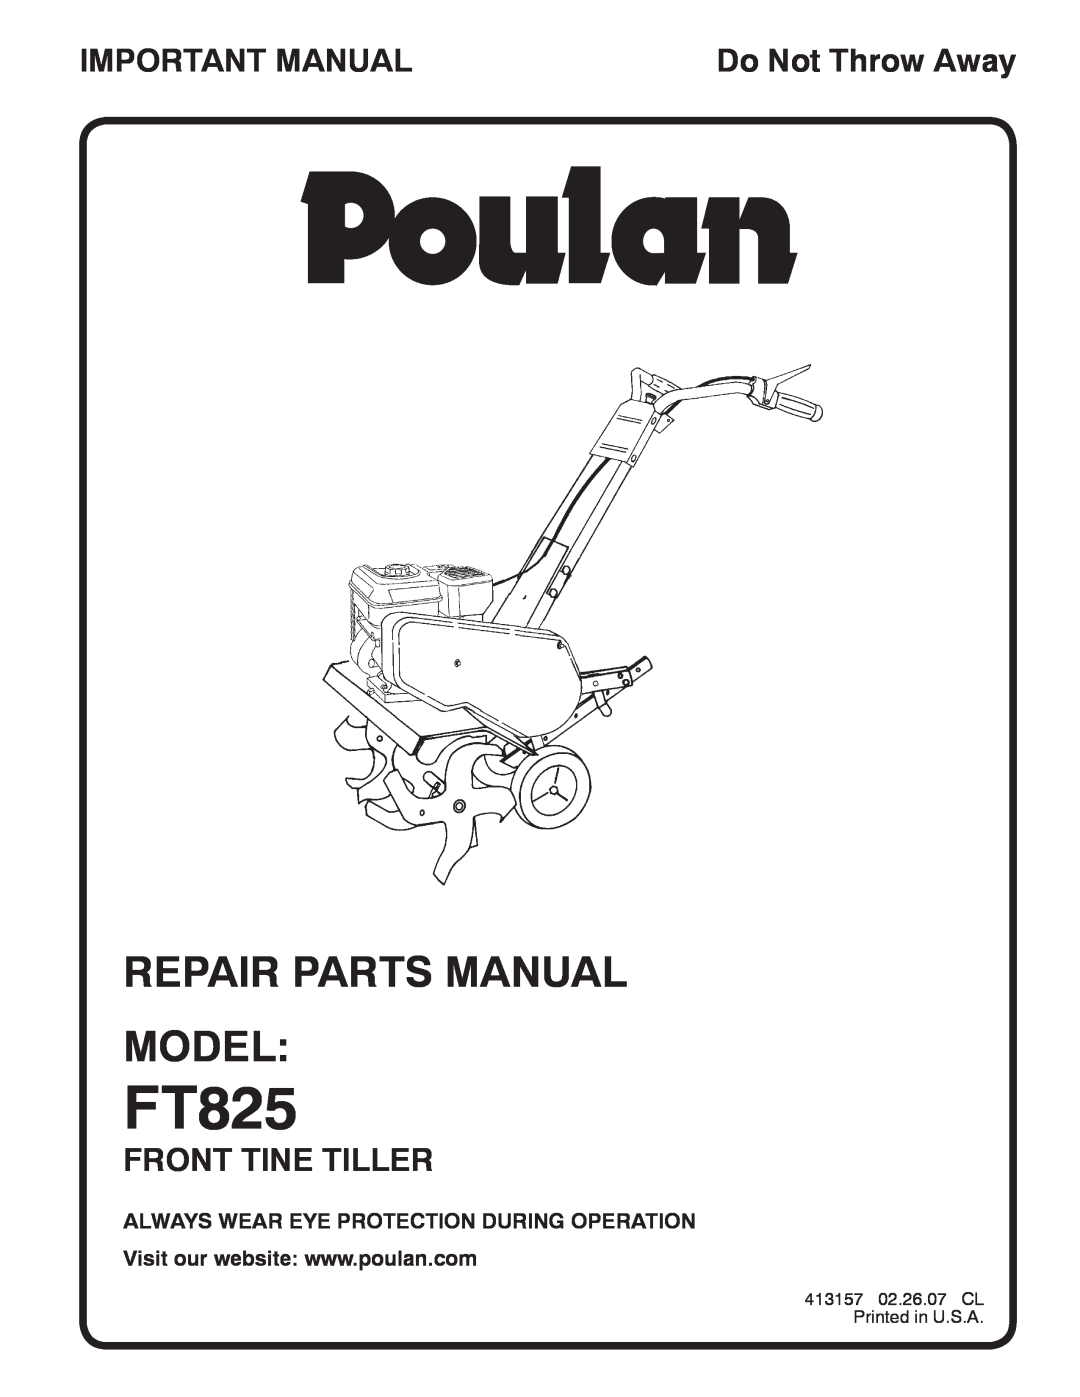 Poulan 96082000700, 413157 manual Repair Parts Manual Model, FT825, Important Manual, Front Tine Tiller, Do Not Throw Away 